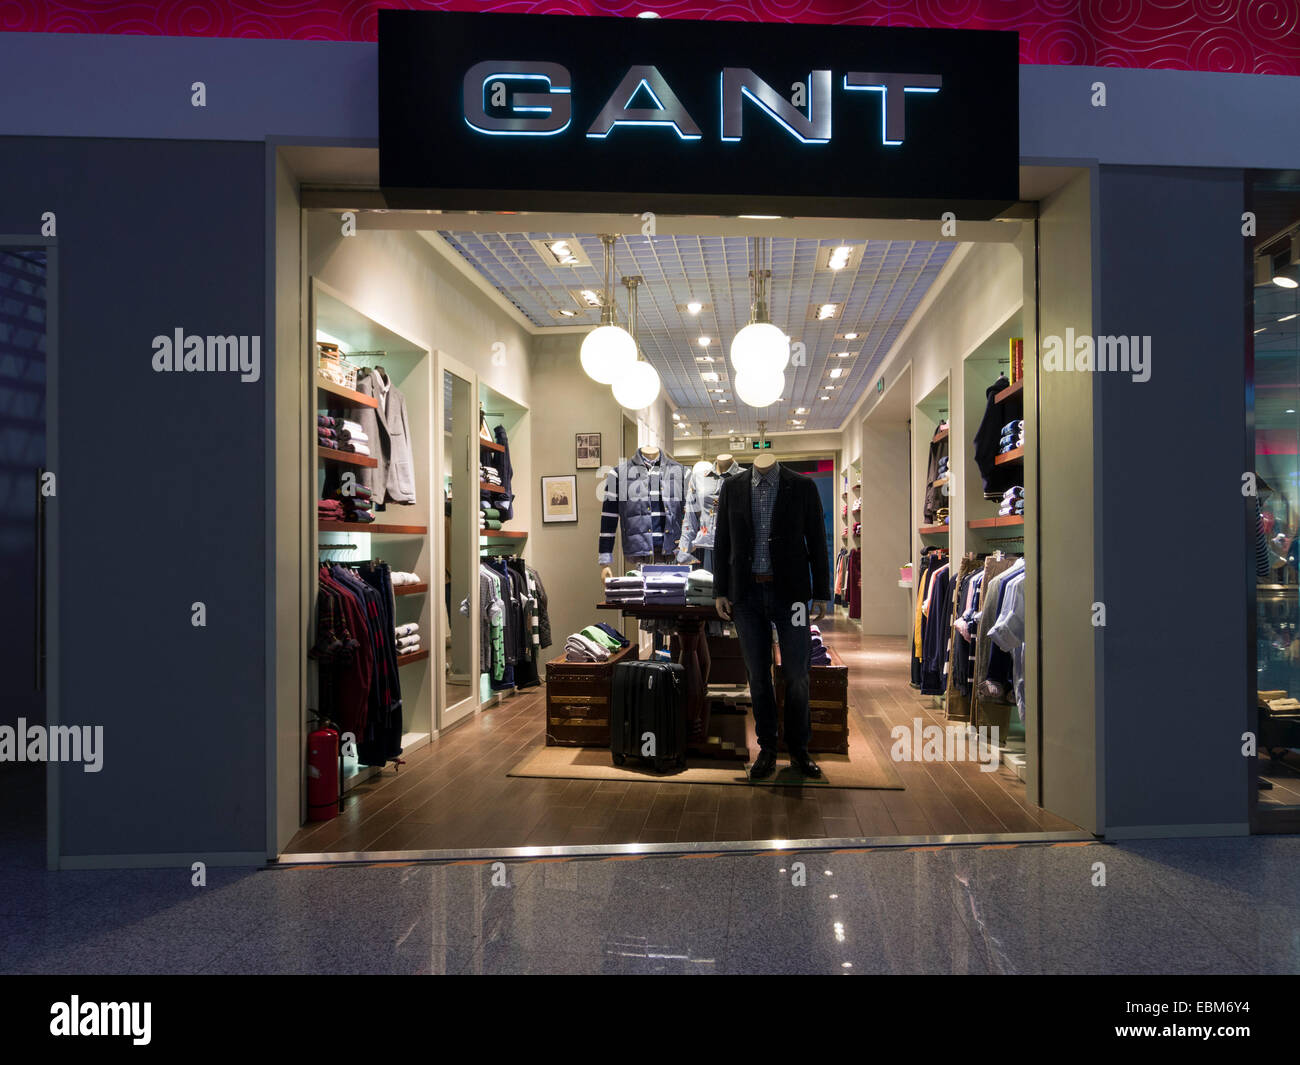 Gant clothing store Stock Photo